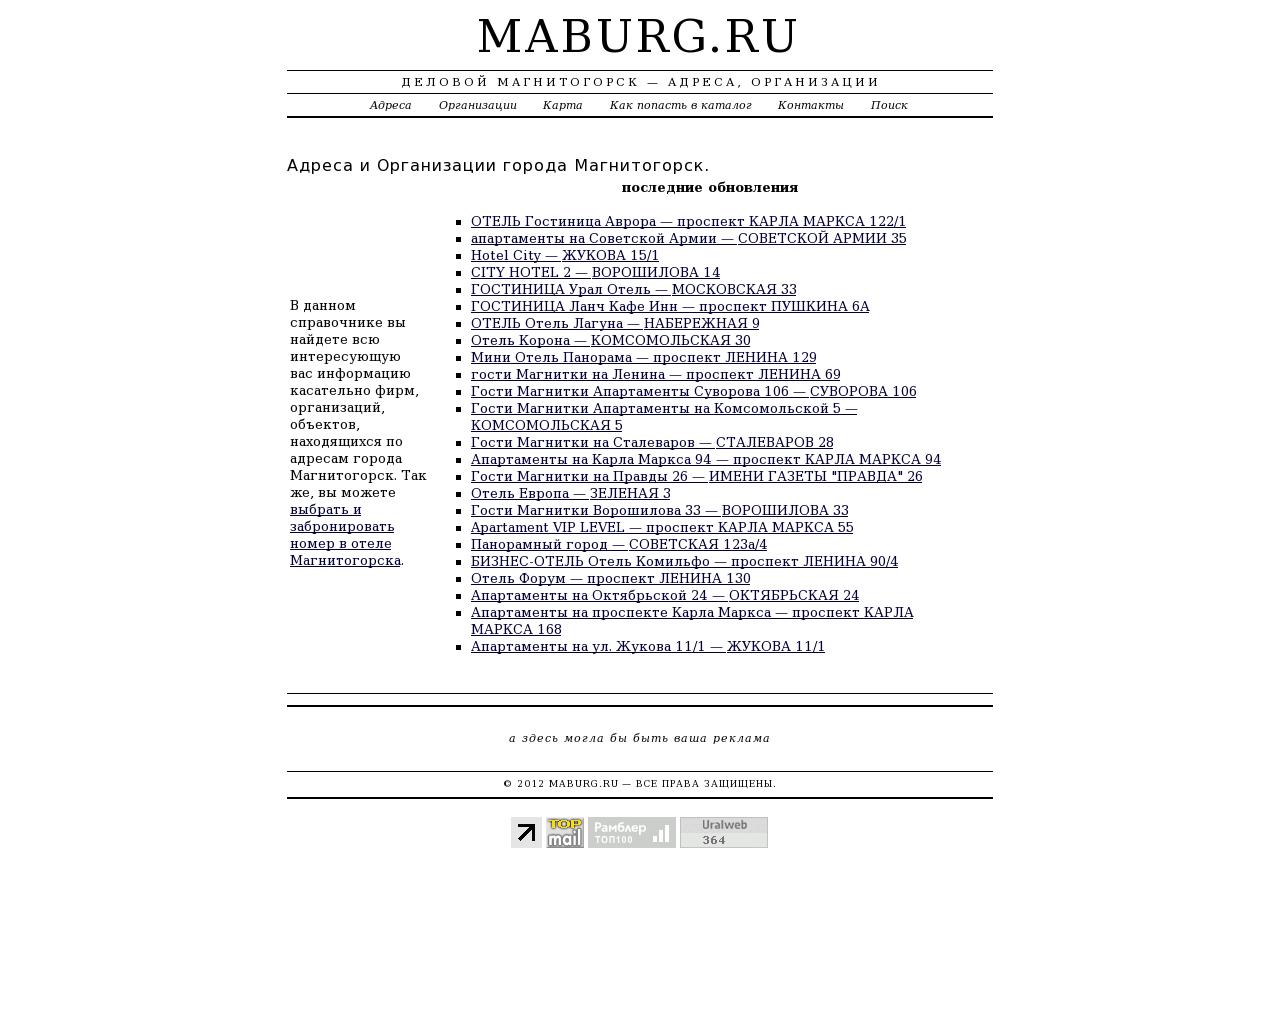 Изображение сайта maburg.ru в разрешении 1280x1024